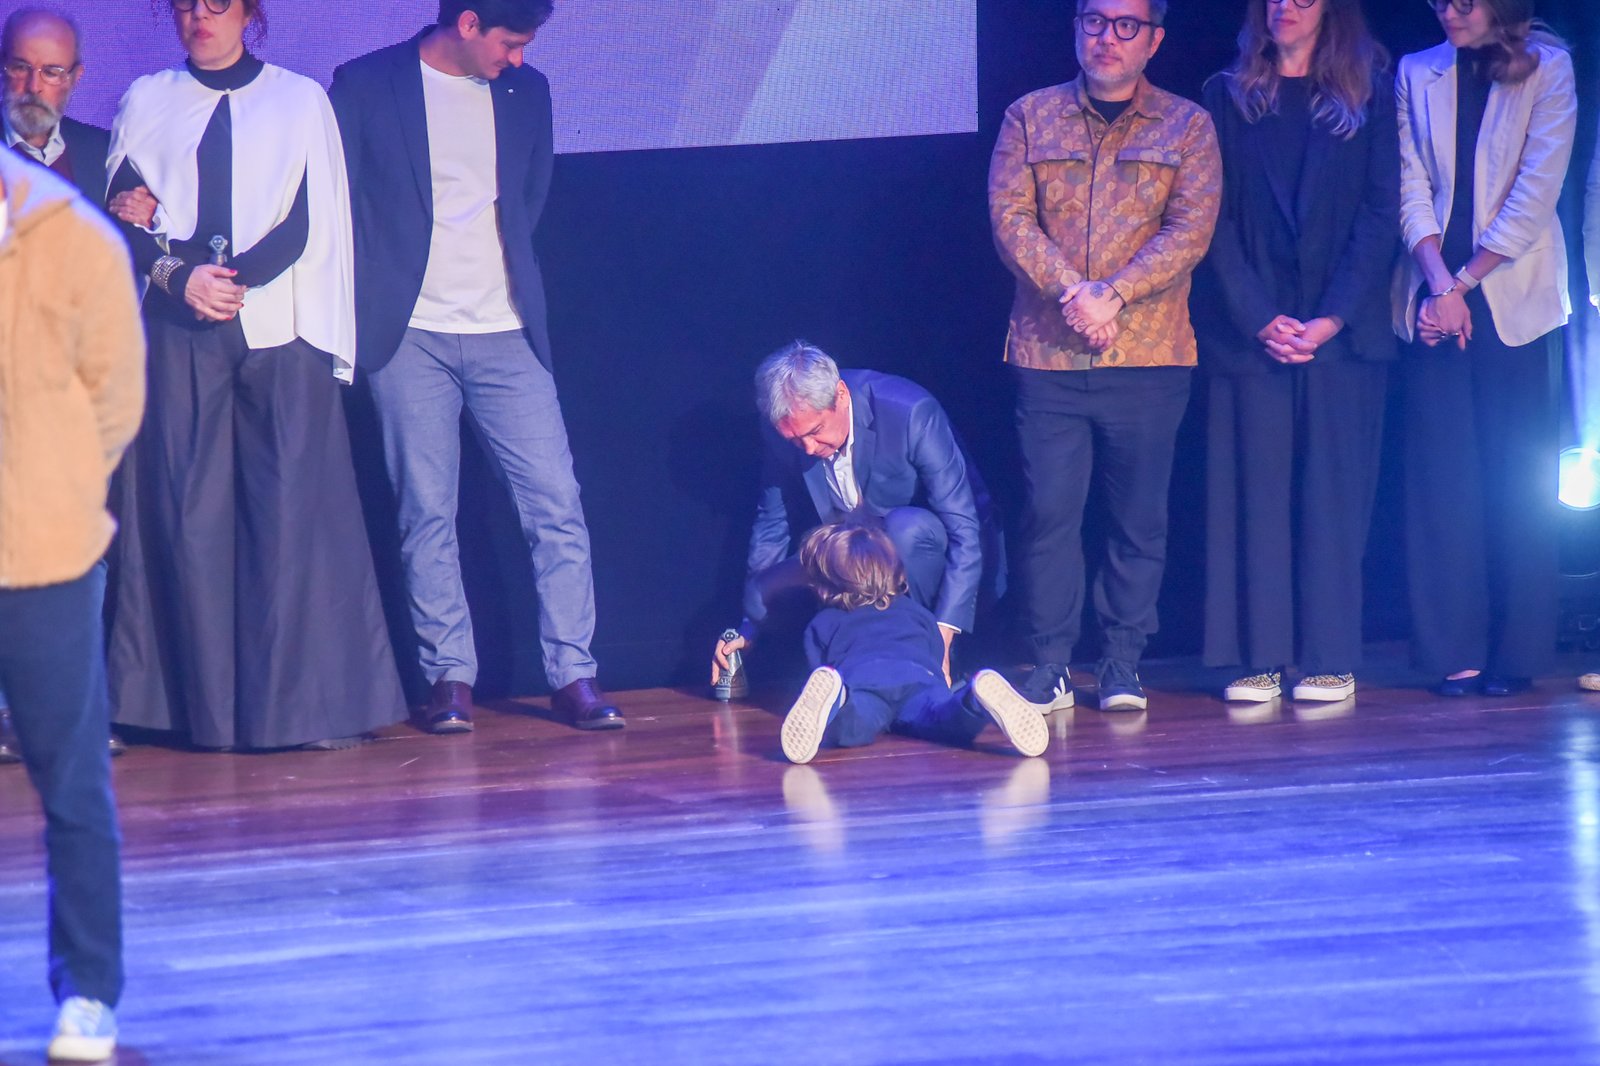 Thomas se jogou no chão do palco de premiação